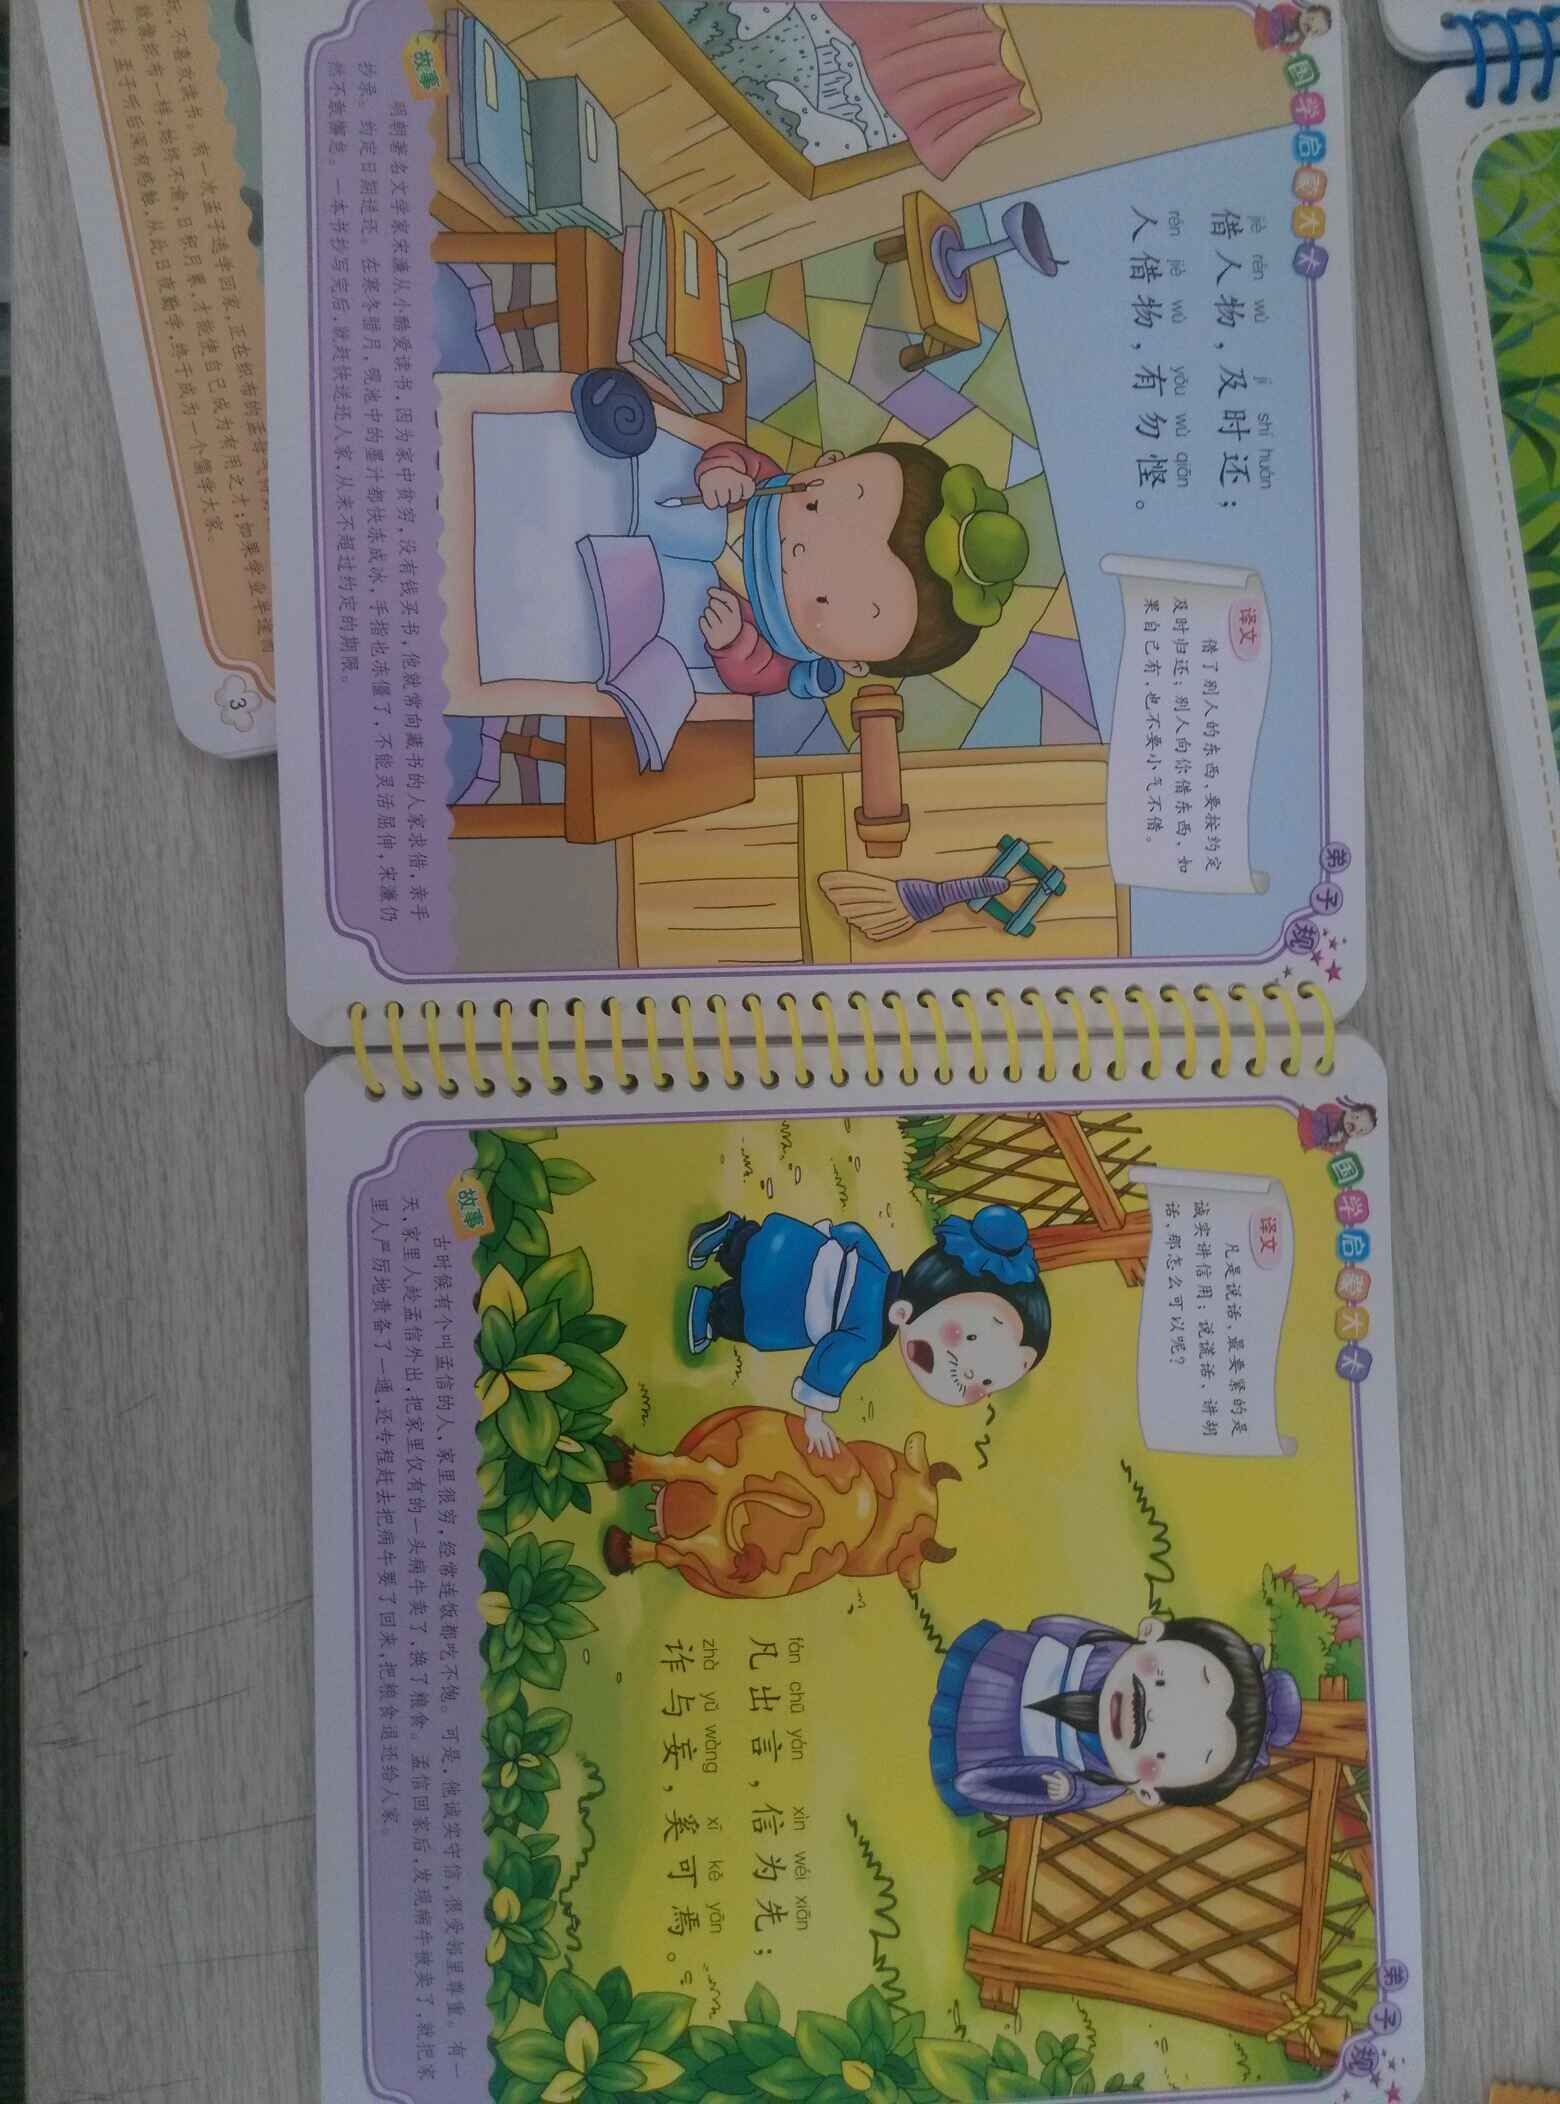 同事说现在幼儿园都在学这本书，于是就先买来让孩子看，书的质量很好，印刷颜色鲜艳，非常不错